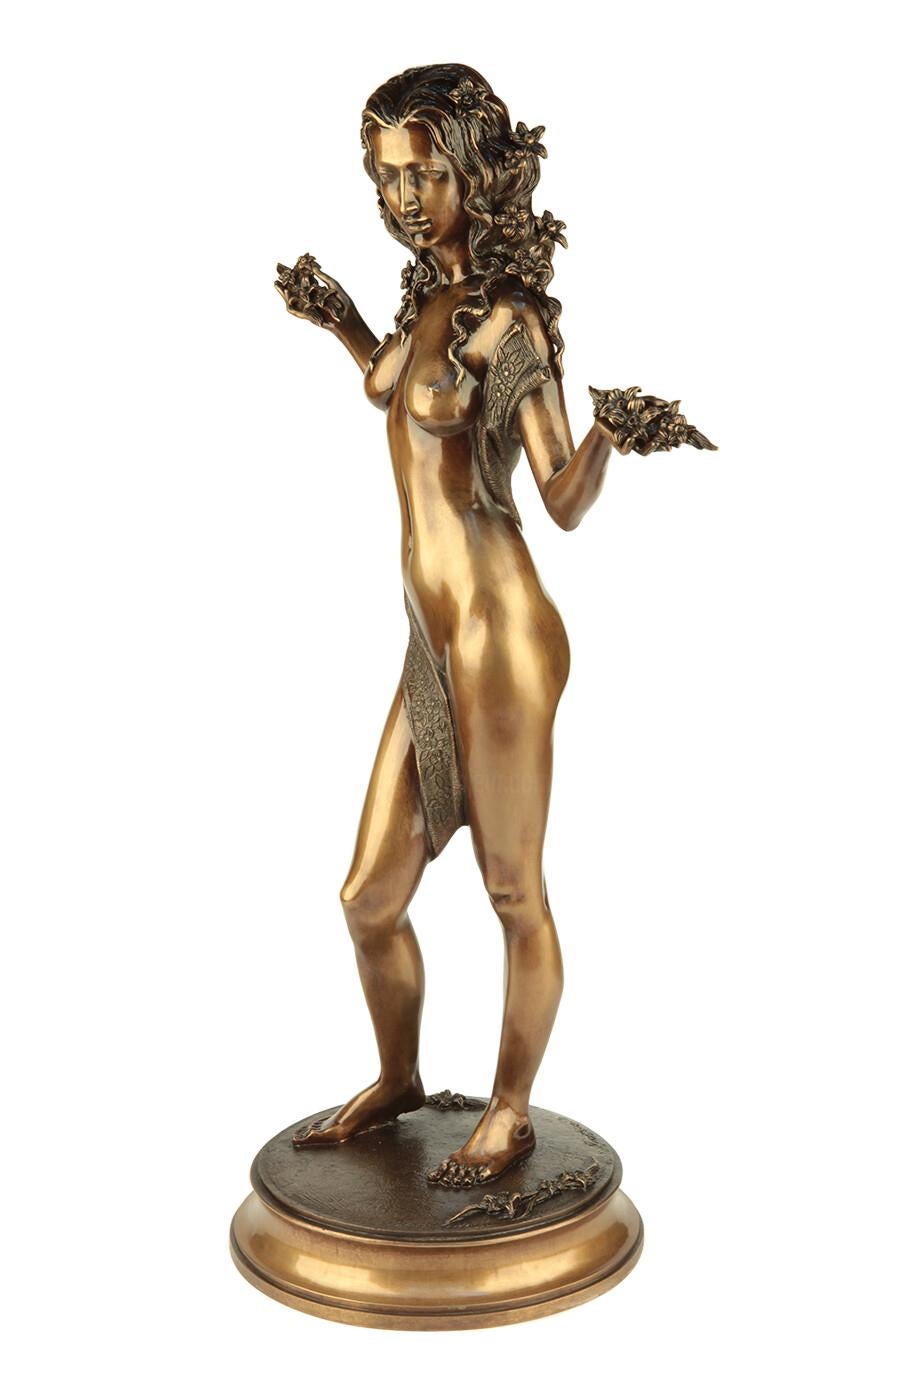 Volodymyr MYKYTENKO Figurative Sculpture - Flower Fairy, Bronze Sculpture by Volodymyr Mykytenko, 2009